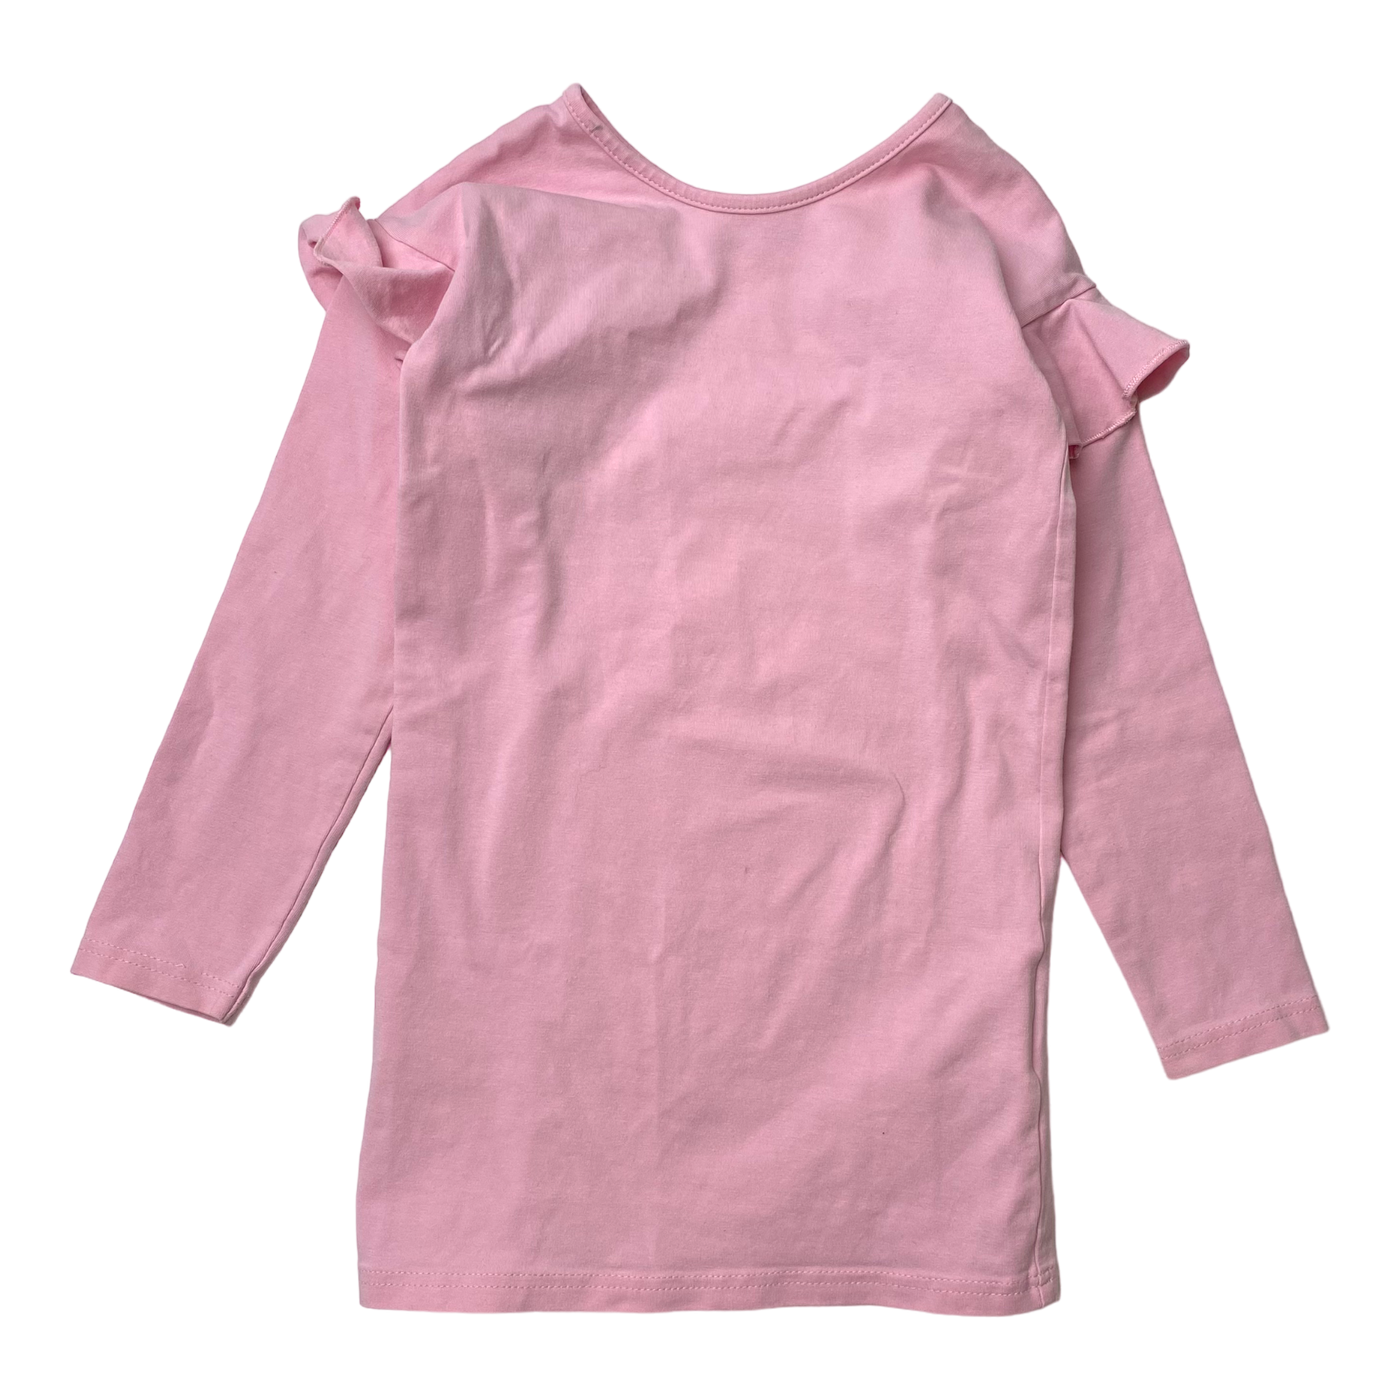 Gugguu frill tunic dress, pink | 92cm